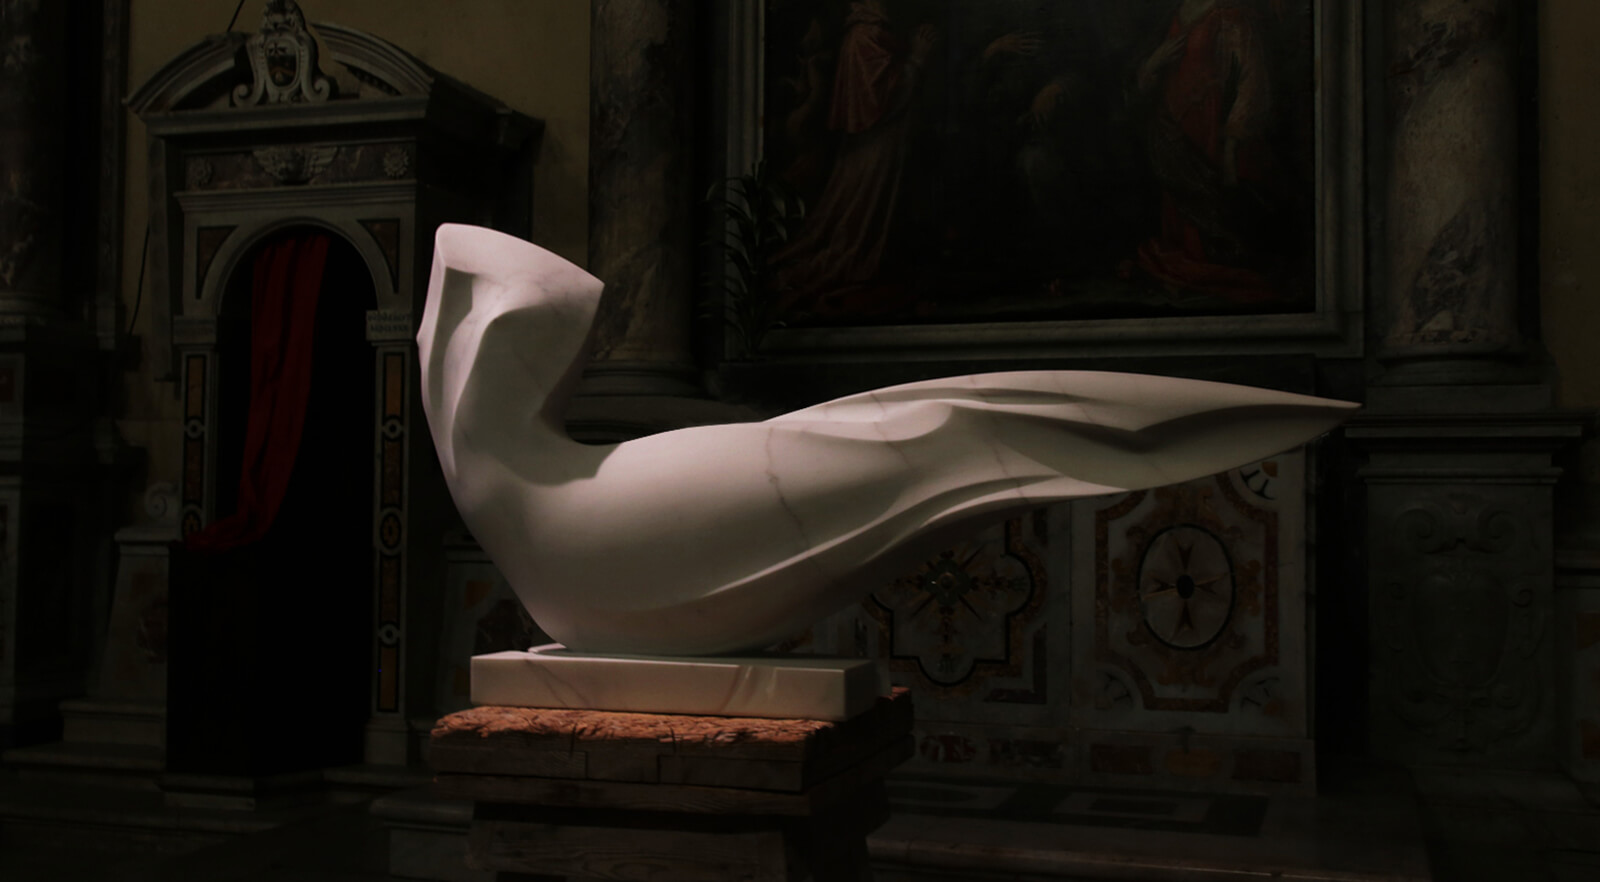 Seravezza Duomo | 2016 | Sirena sognante